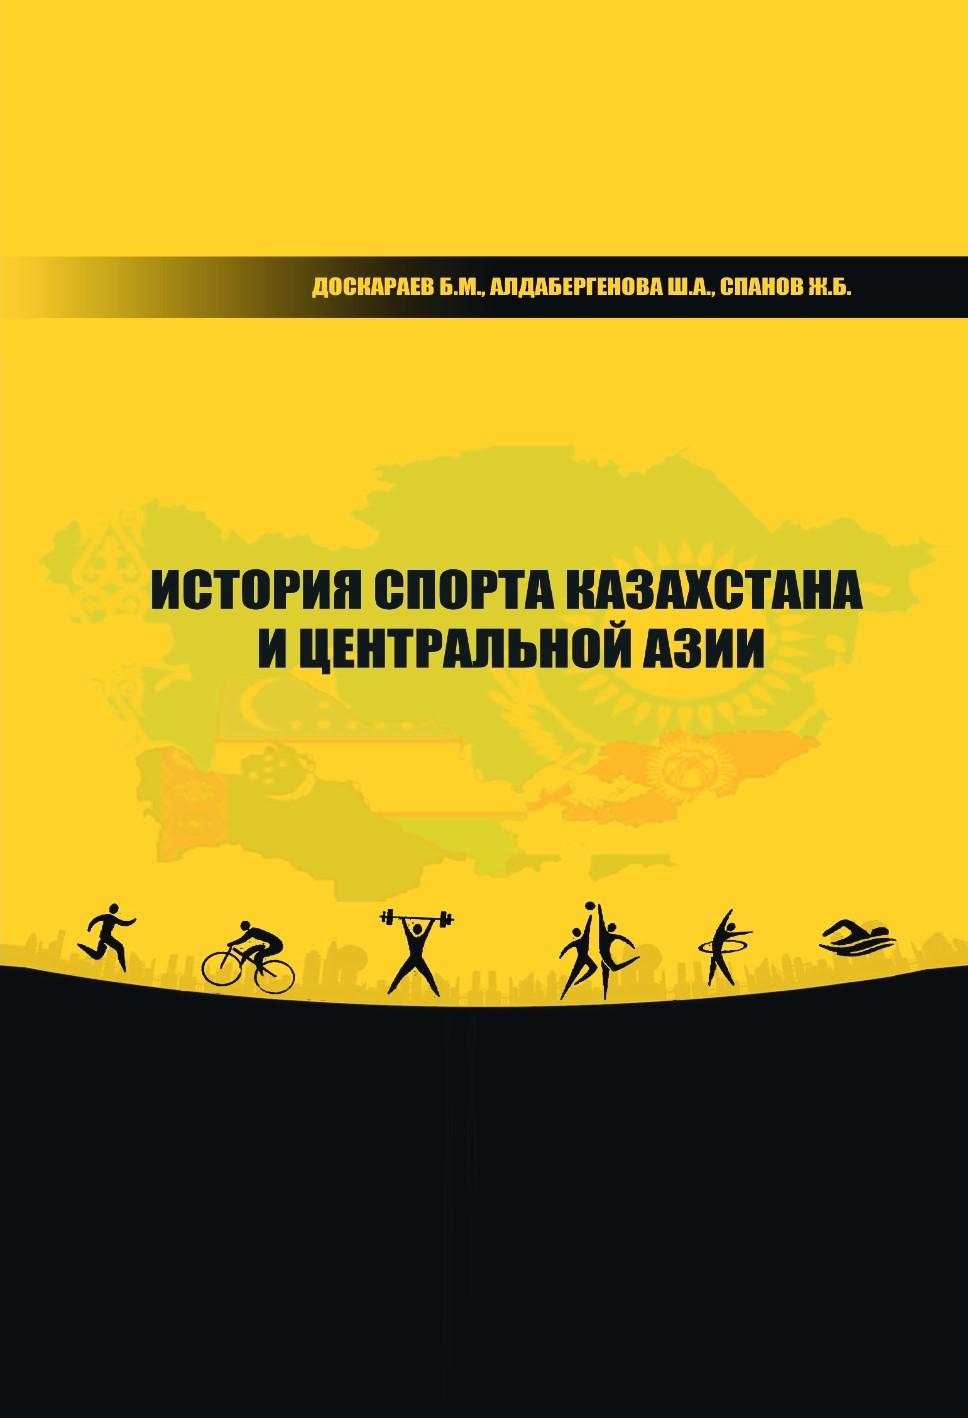 История спорта Казахстана и Центральной Азии. Учебноепособие.